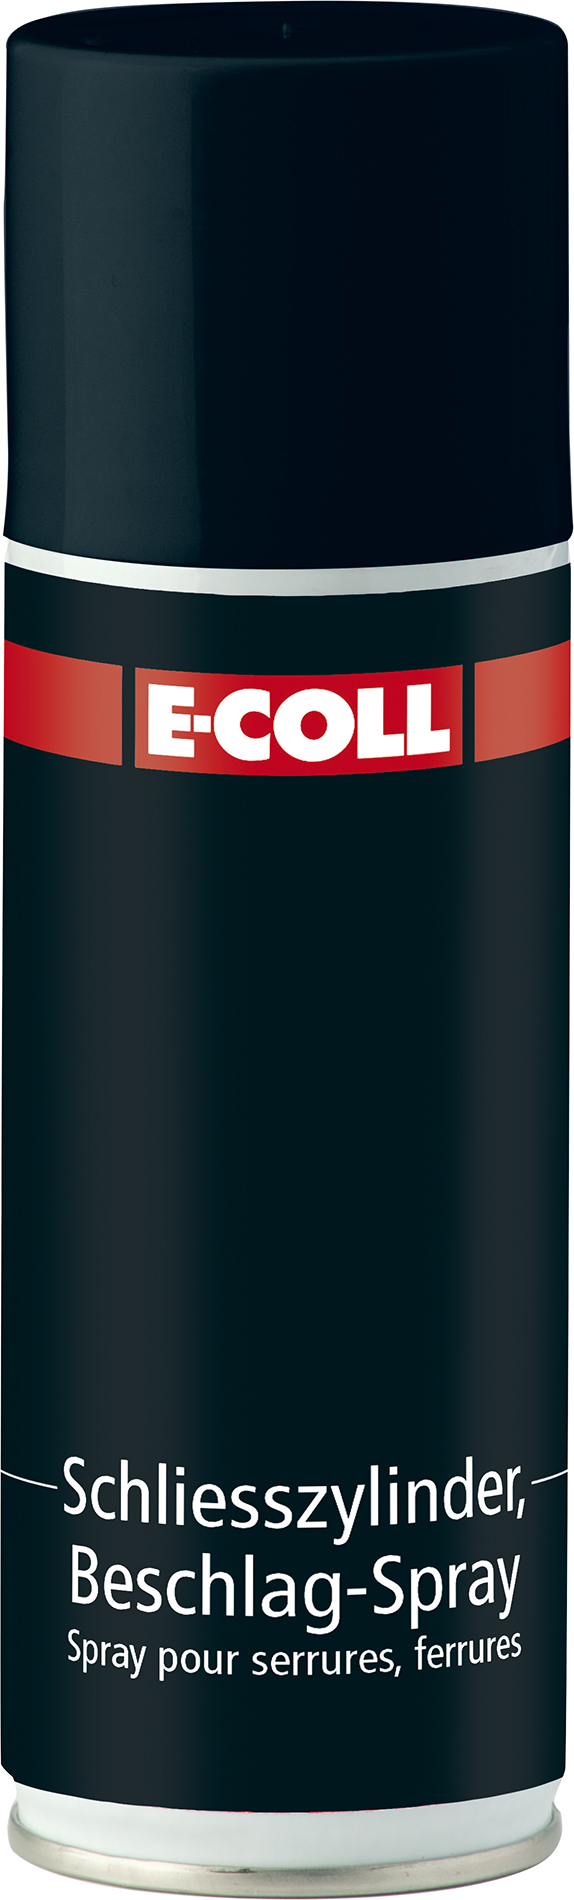 Image de Schließzylinder- und Beschlagspray 200ml E-COLL